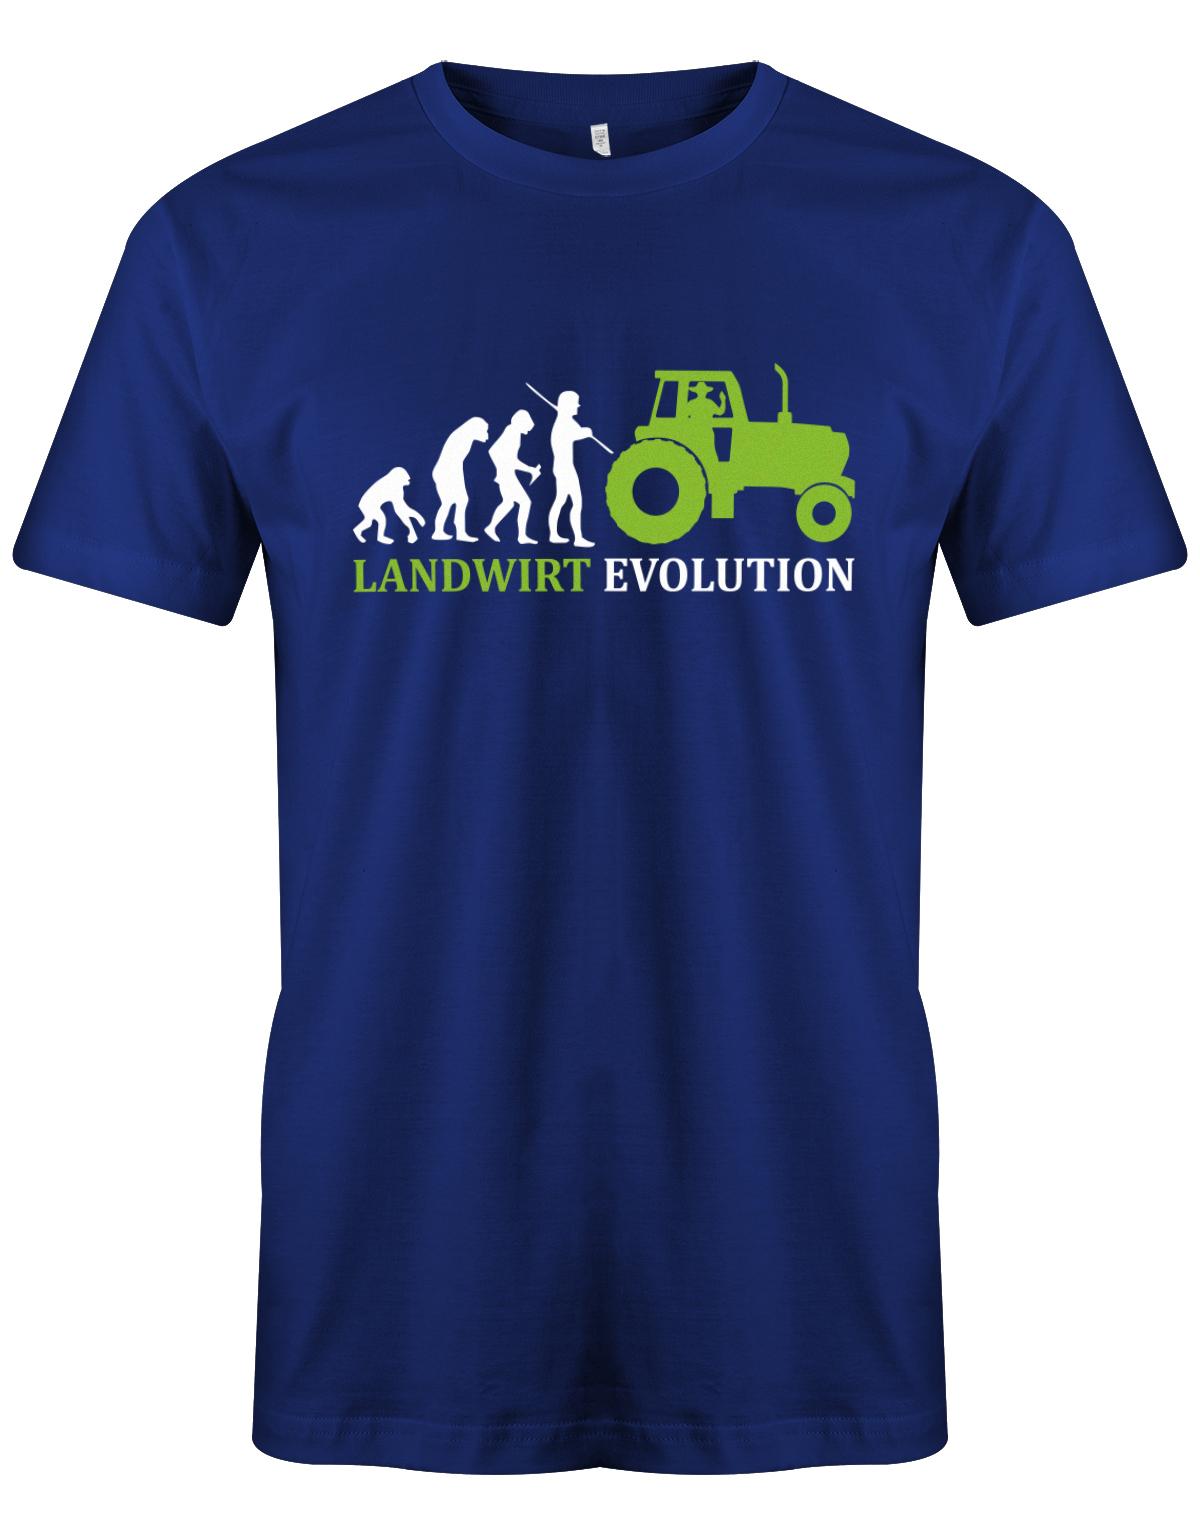 Landwirtschaft Shirt Männer - Landwirt Evolution Royalblau